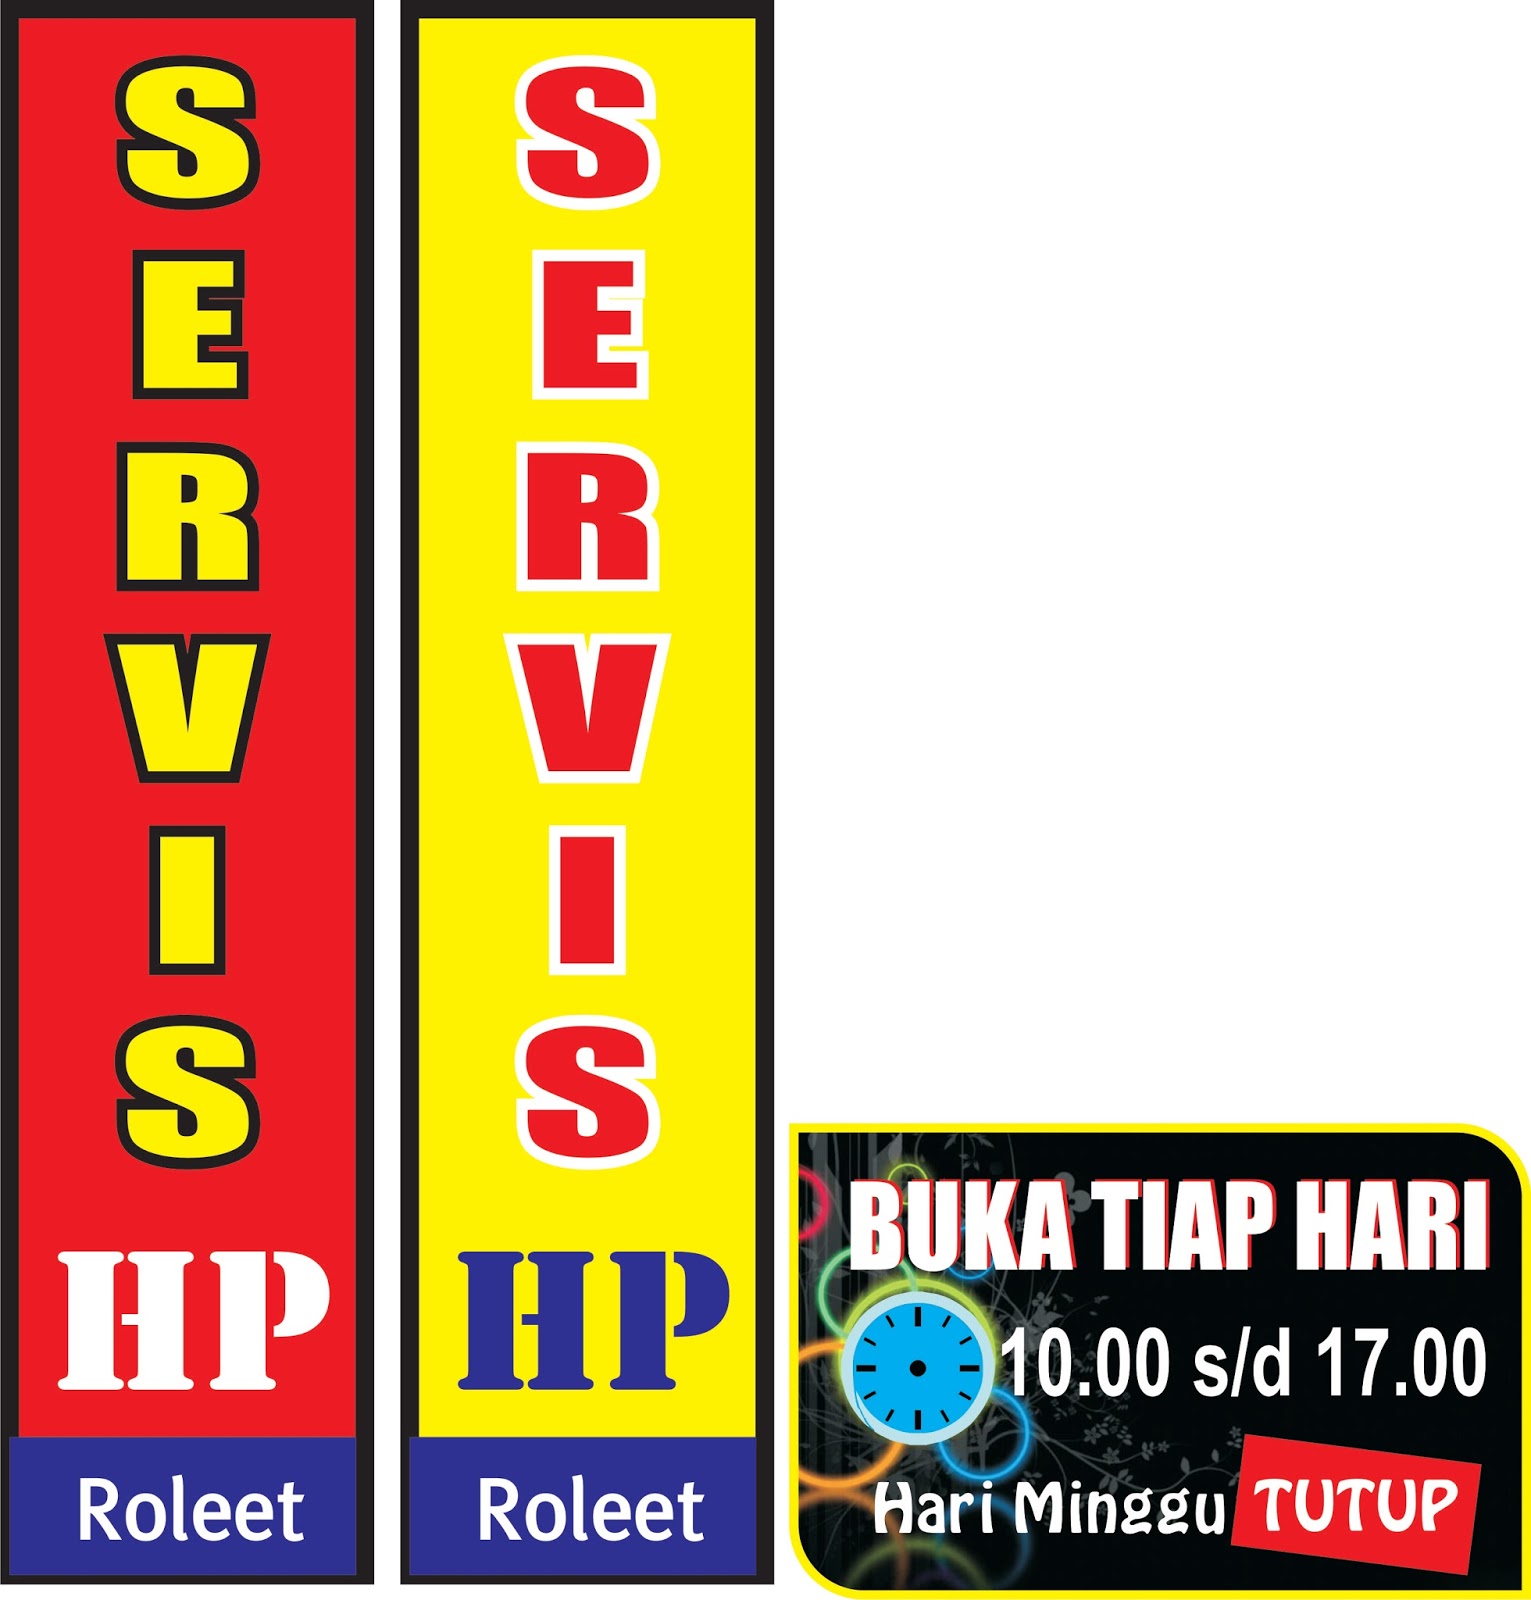 Download Contoh Spanduk Service HP  cdr KARYAKU